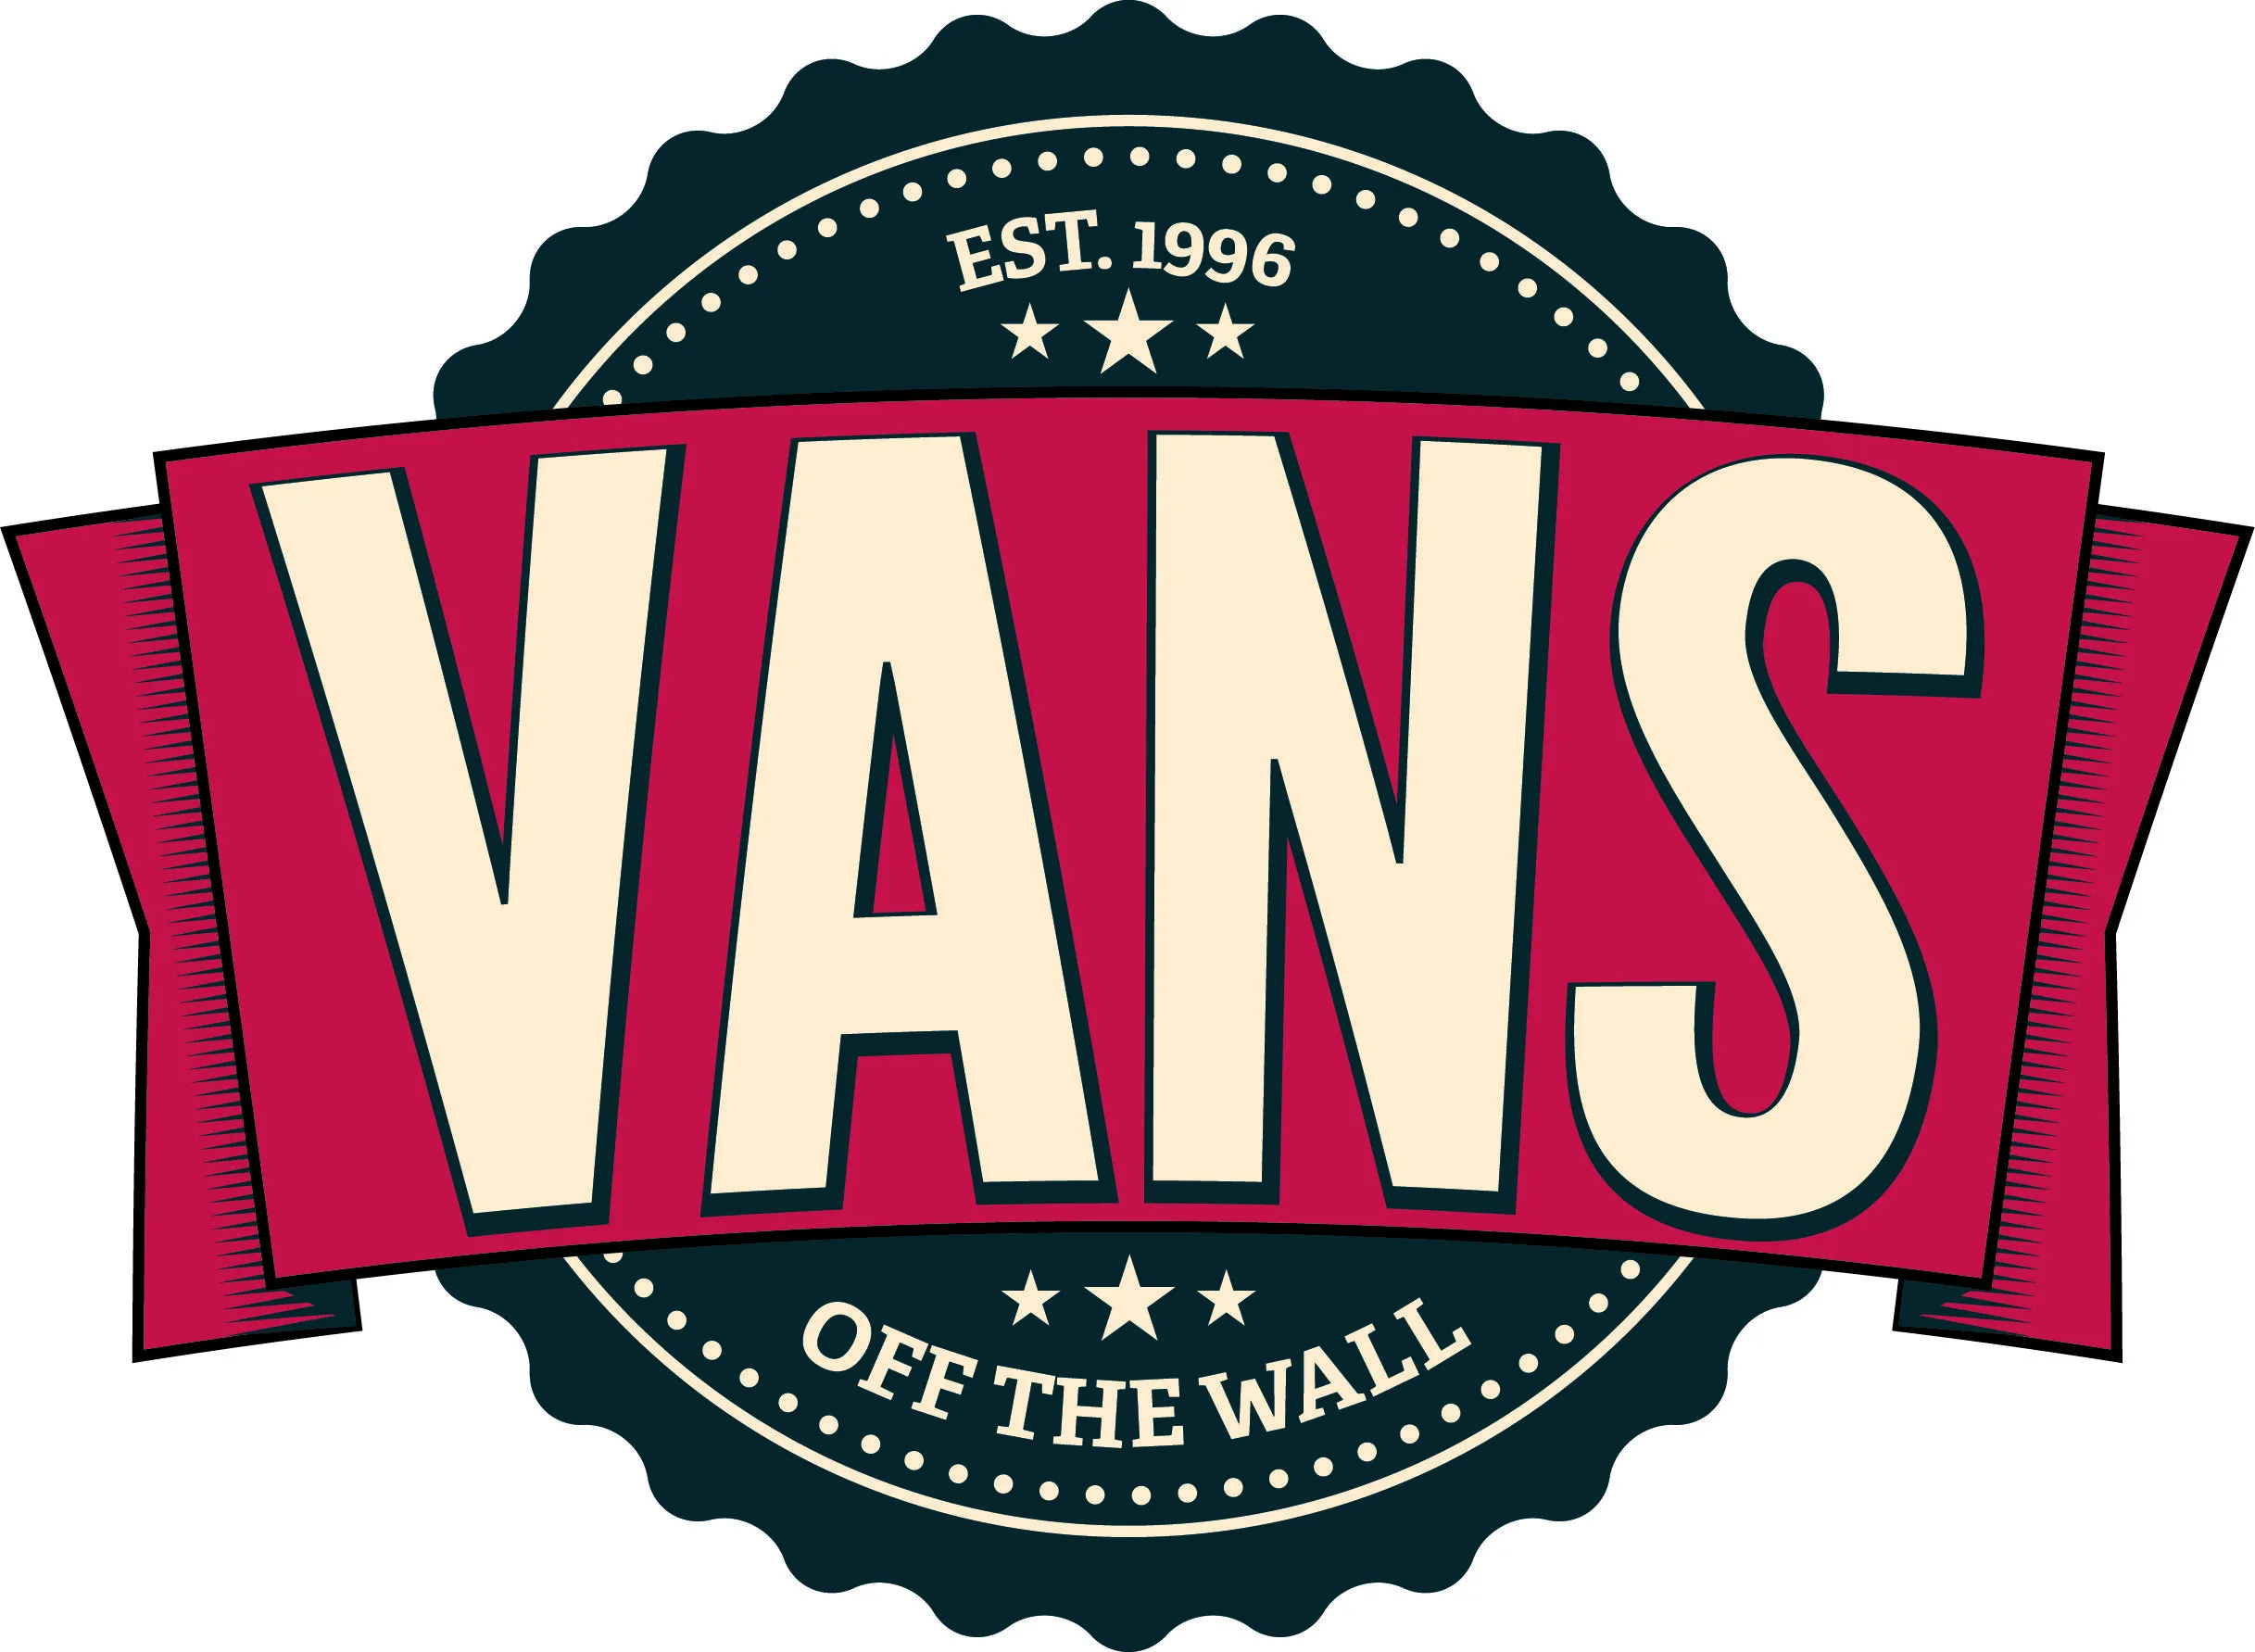 Vans Logo Identity | Flickr - Photo Sharing!